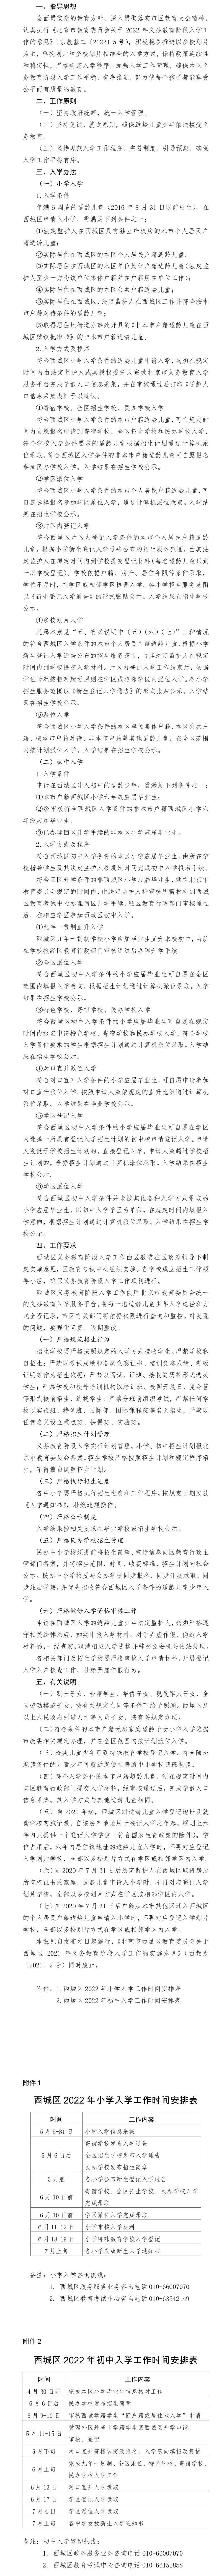 北京市西城区教育委员会关于西城区2022年义务教育阶段入学工作的实施意见.jpg